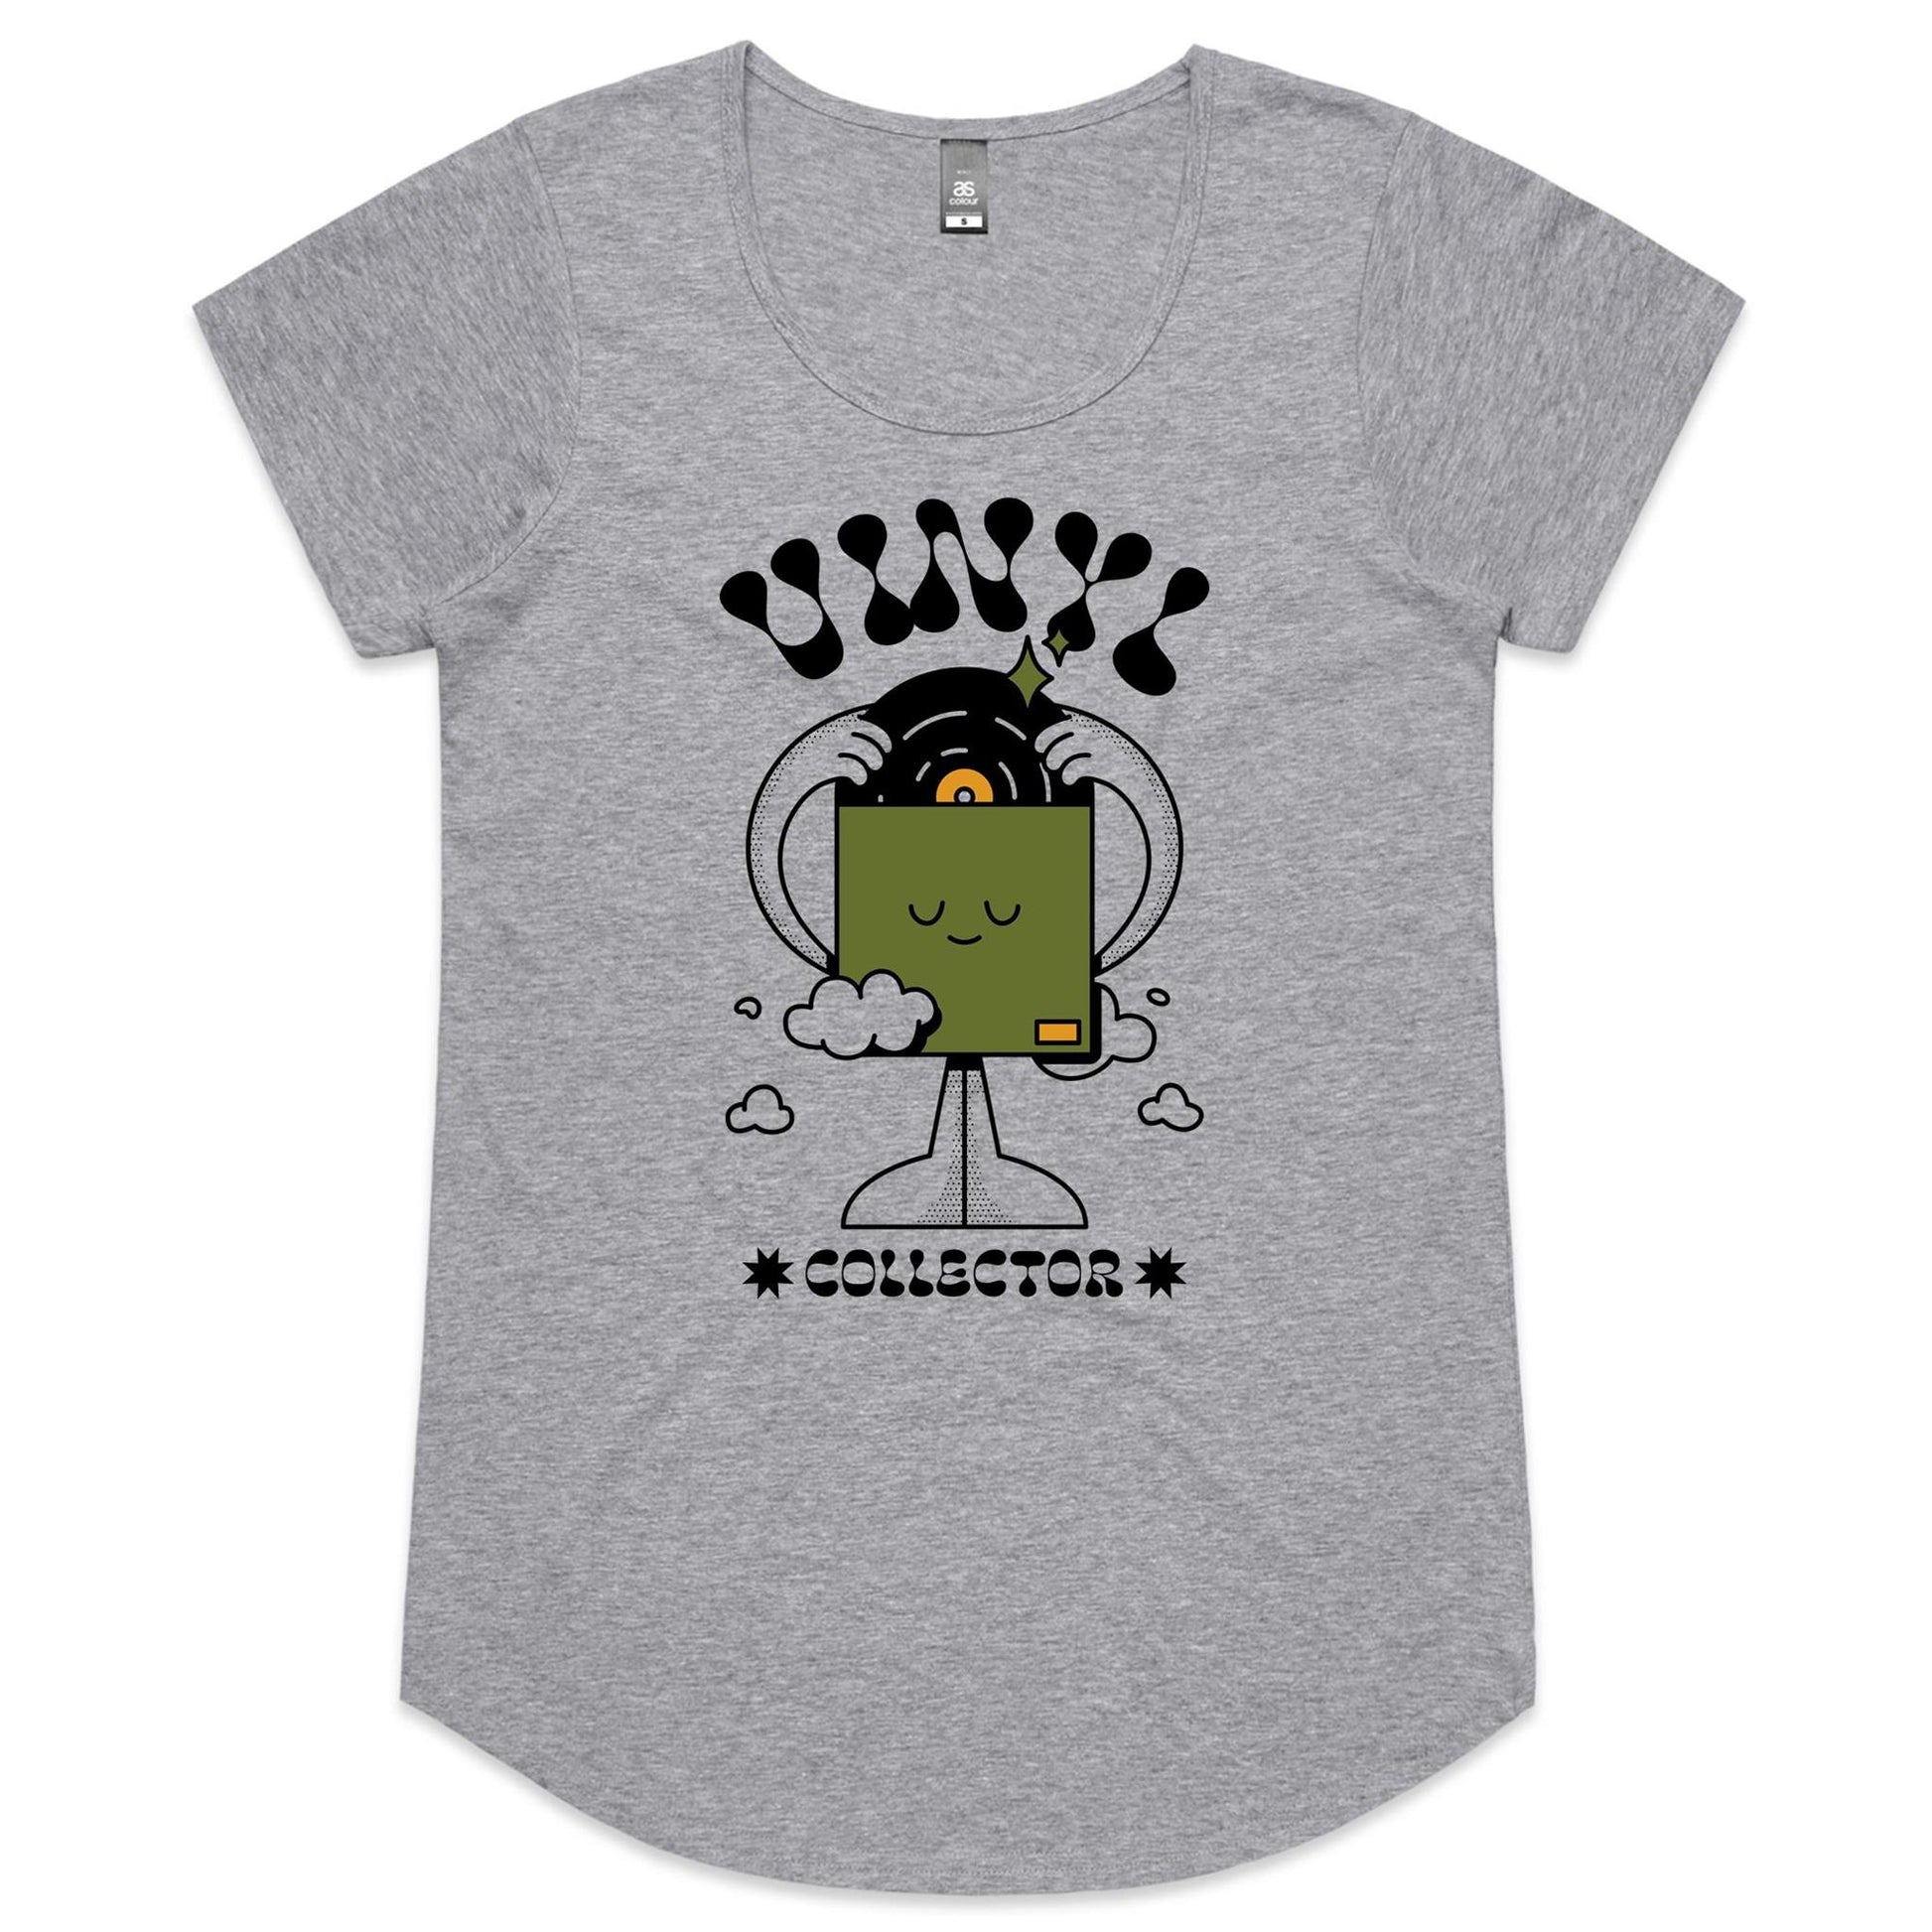 Vinyl Collector - Womens Scoop Neck T-Shirt Grey Marle Womens Scoop Neck T-shirt Music Retro